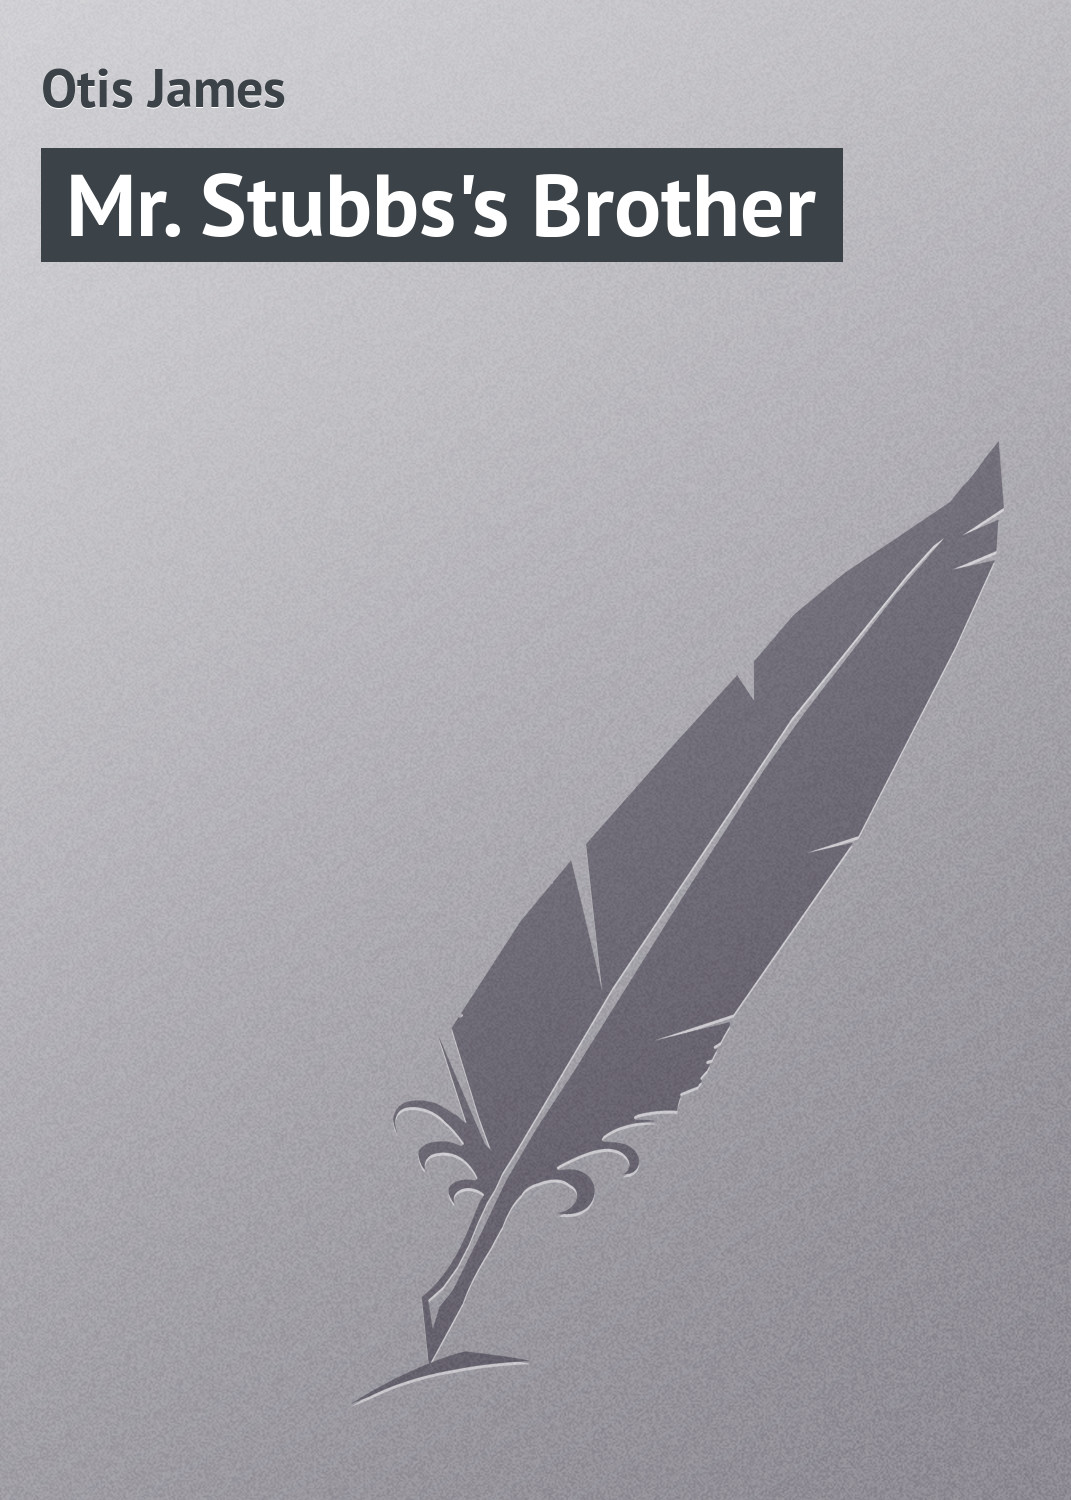 Книга Mr. Stubbs's Brother из серии , созданная James Otis, может относится к жанру Зарубежная классика, Зарубежные детские книги, Иностранные языки. Стоимость электронной книги Mr. Stubbs's Brother с идентификатором 23154187 составляет 5.99 руб.